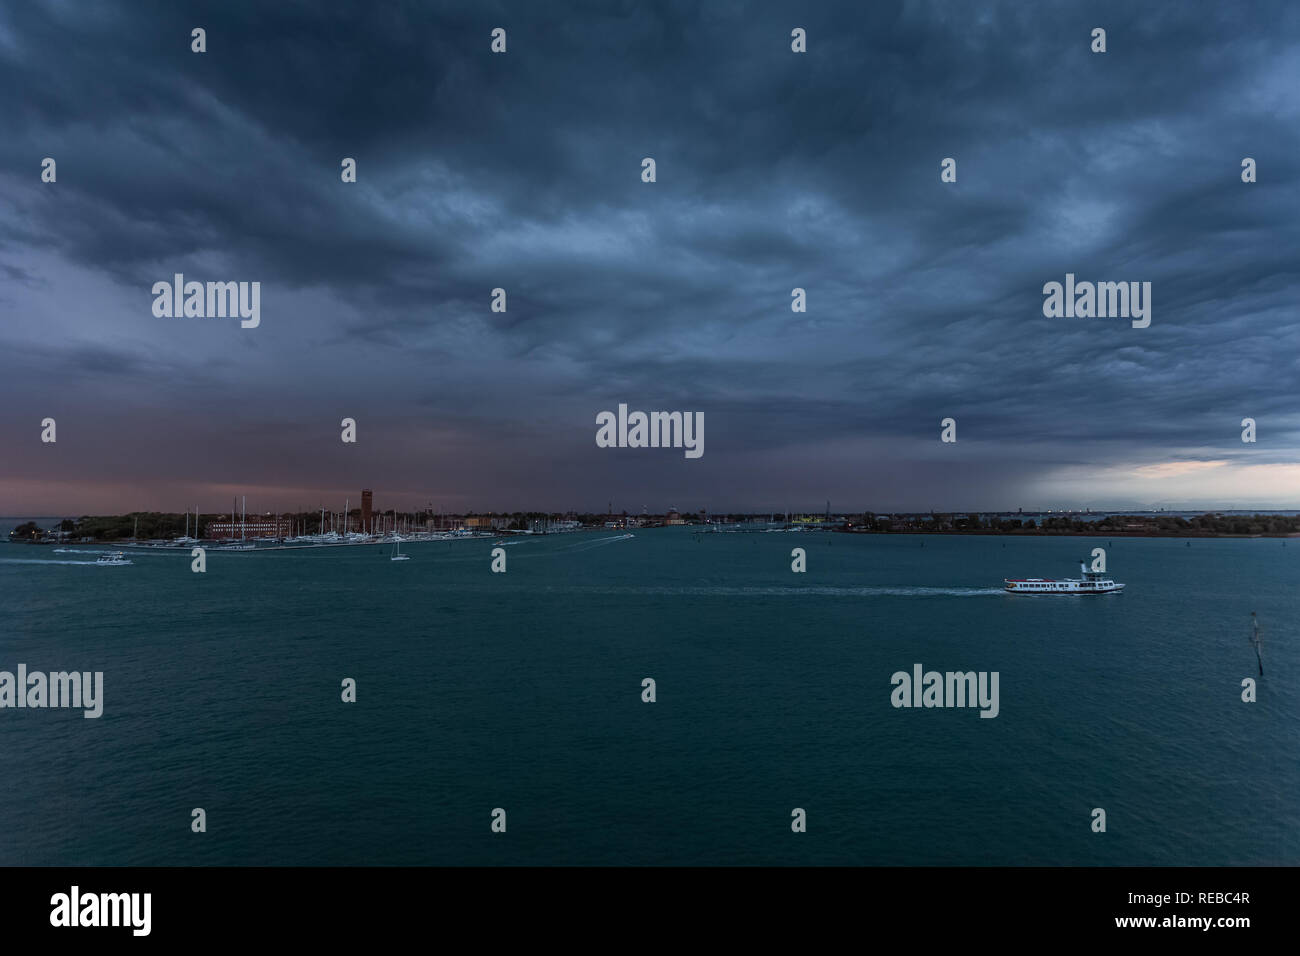 Gewitterwolken über Sant'Elena Insel in der Lagune von Venedig mit dem Boot Verkehr Stockfoto